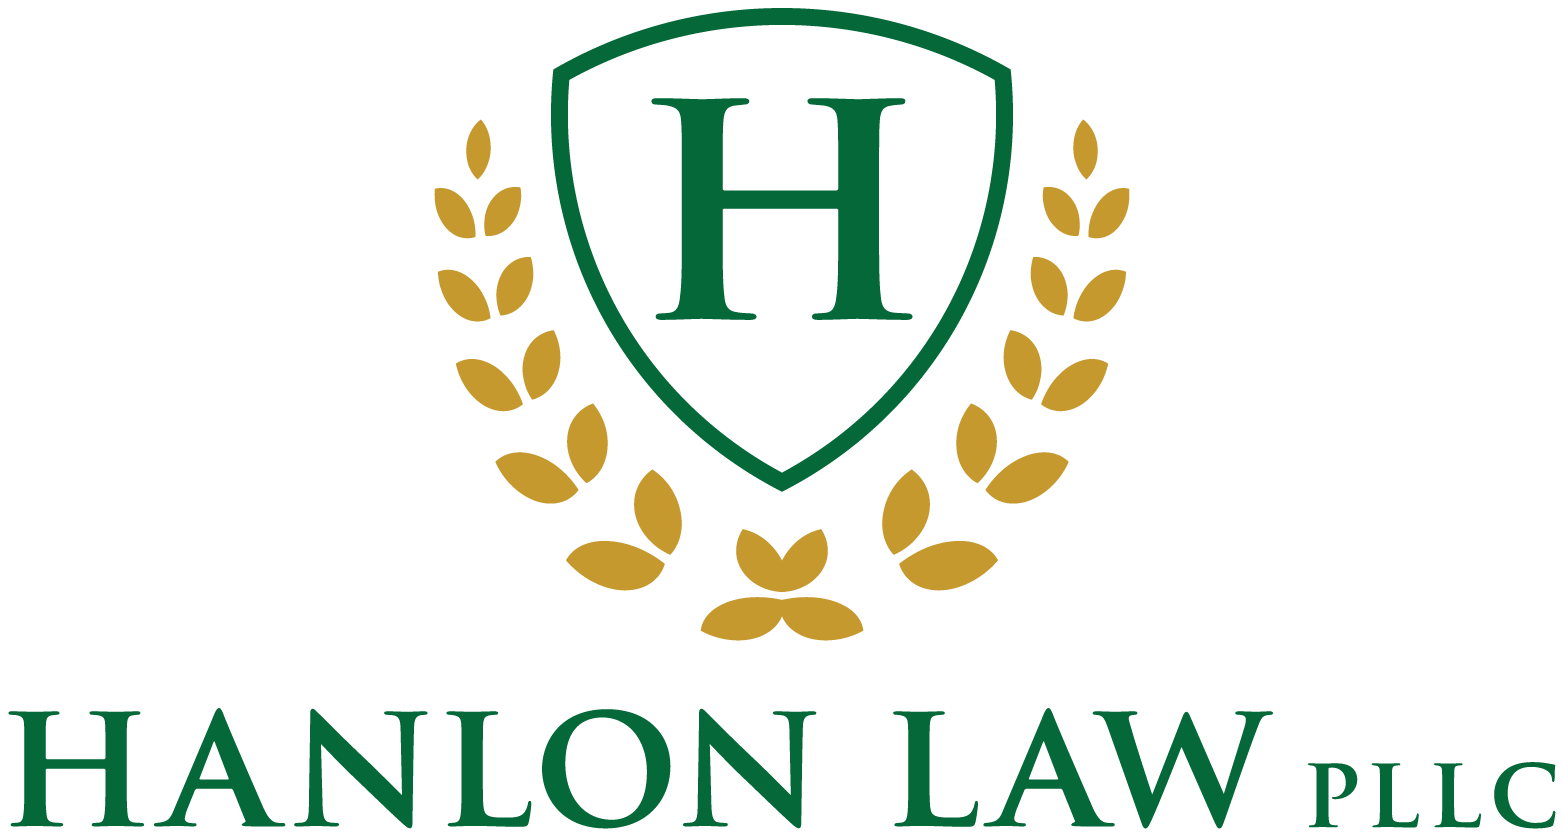 Hanlon Law PLLC